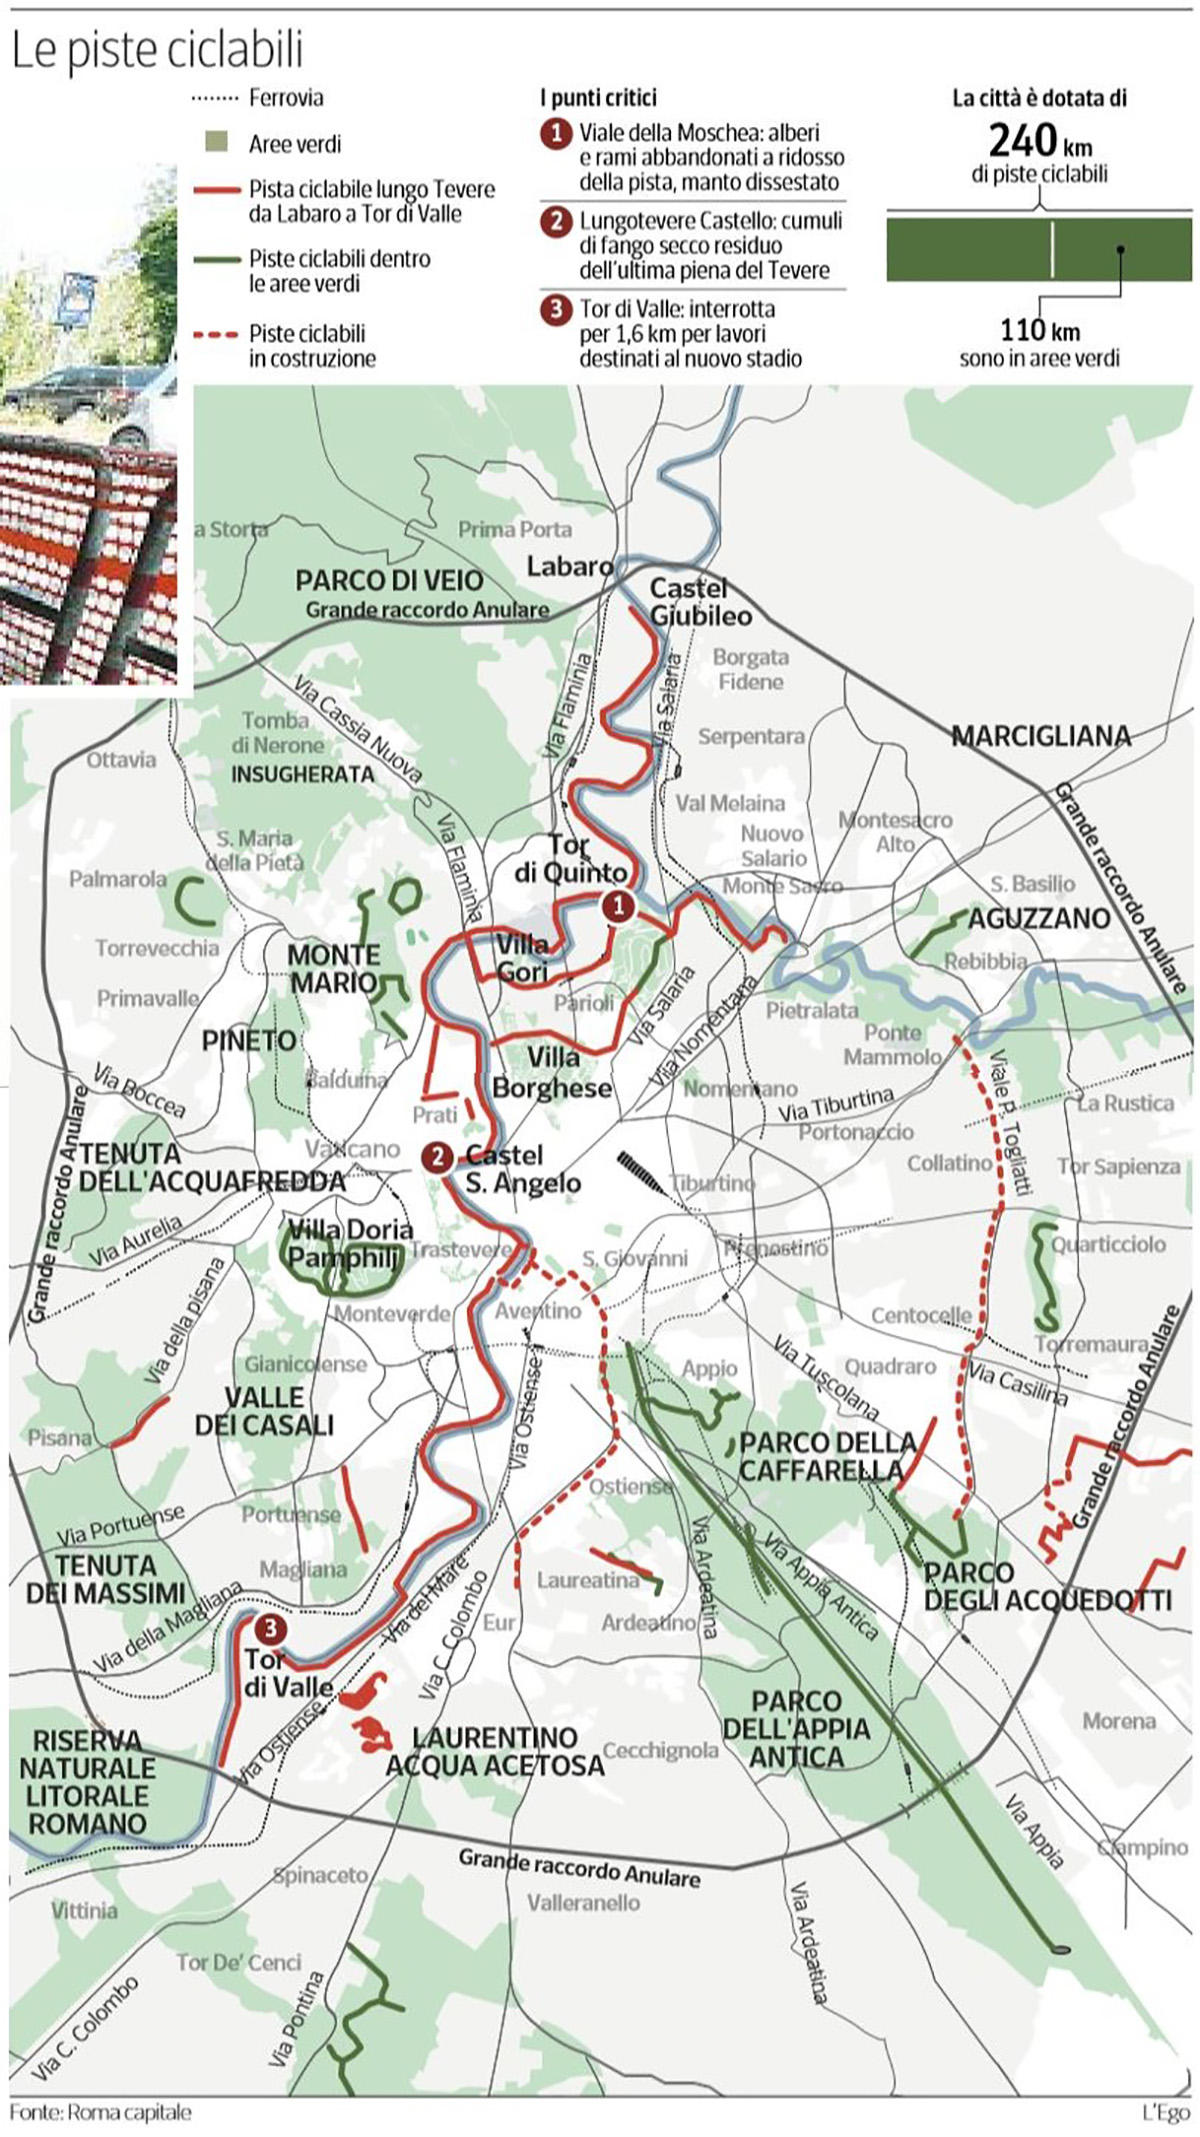 La mappa delle piste ciclabili presenti a Roma Capitale